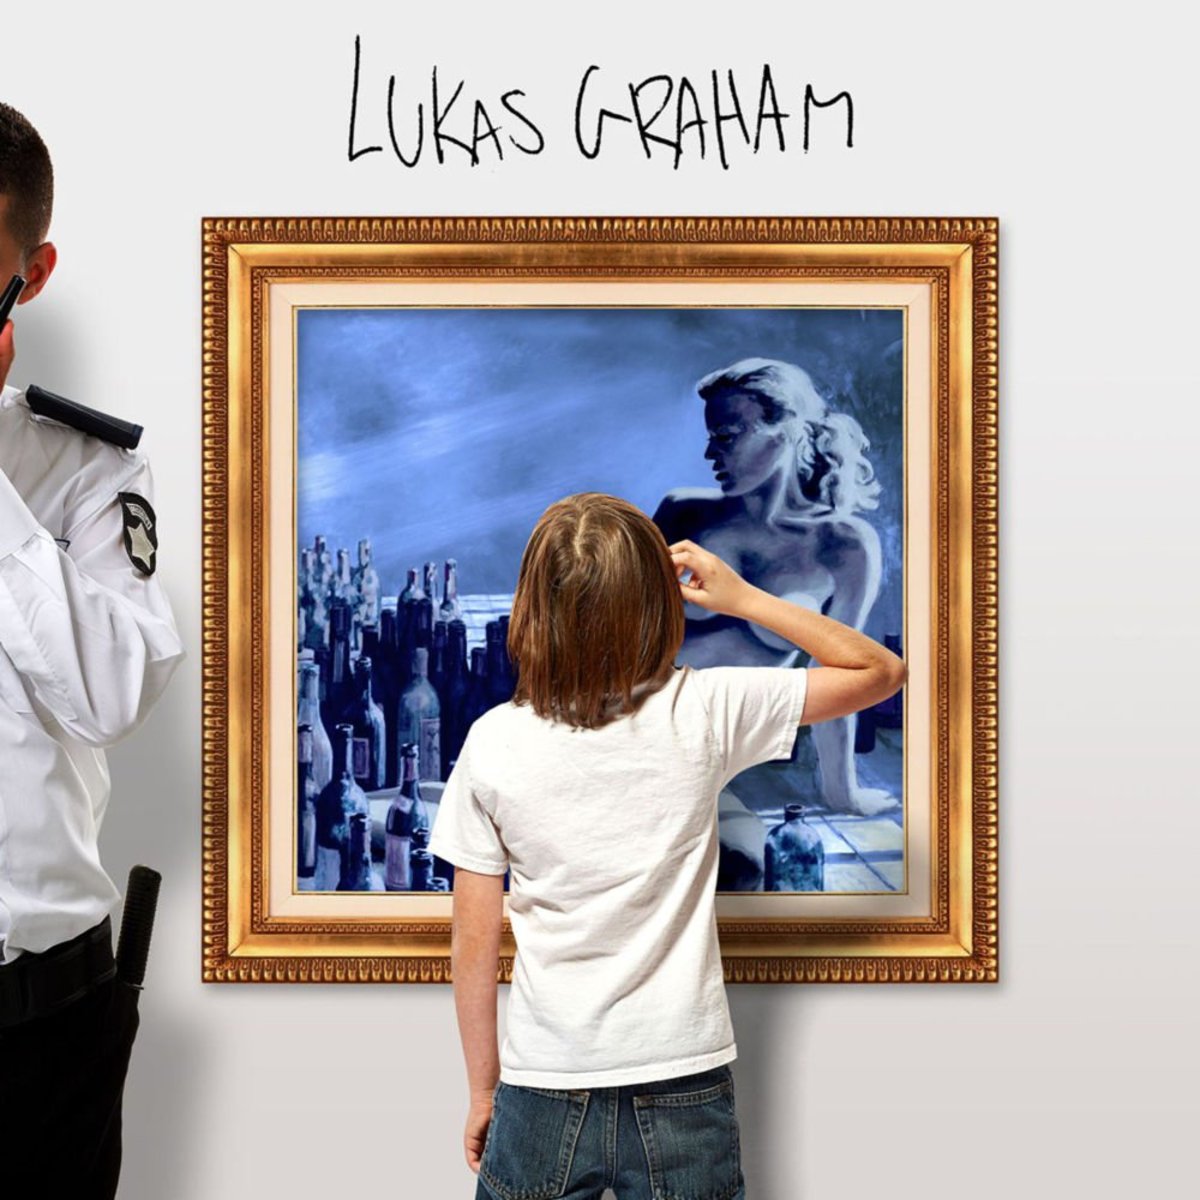 Lukas Graham - "7 Years"